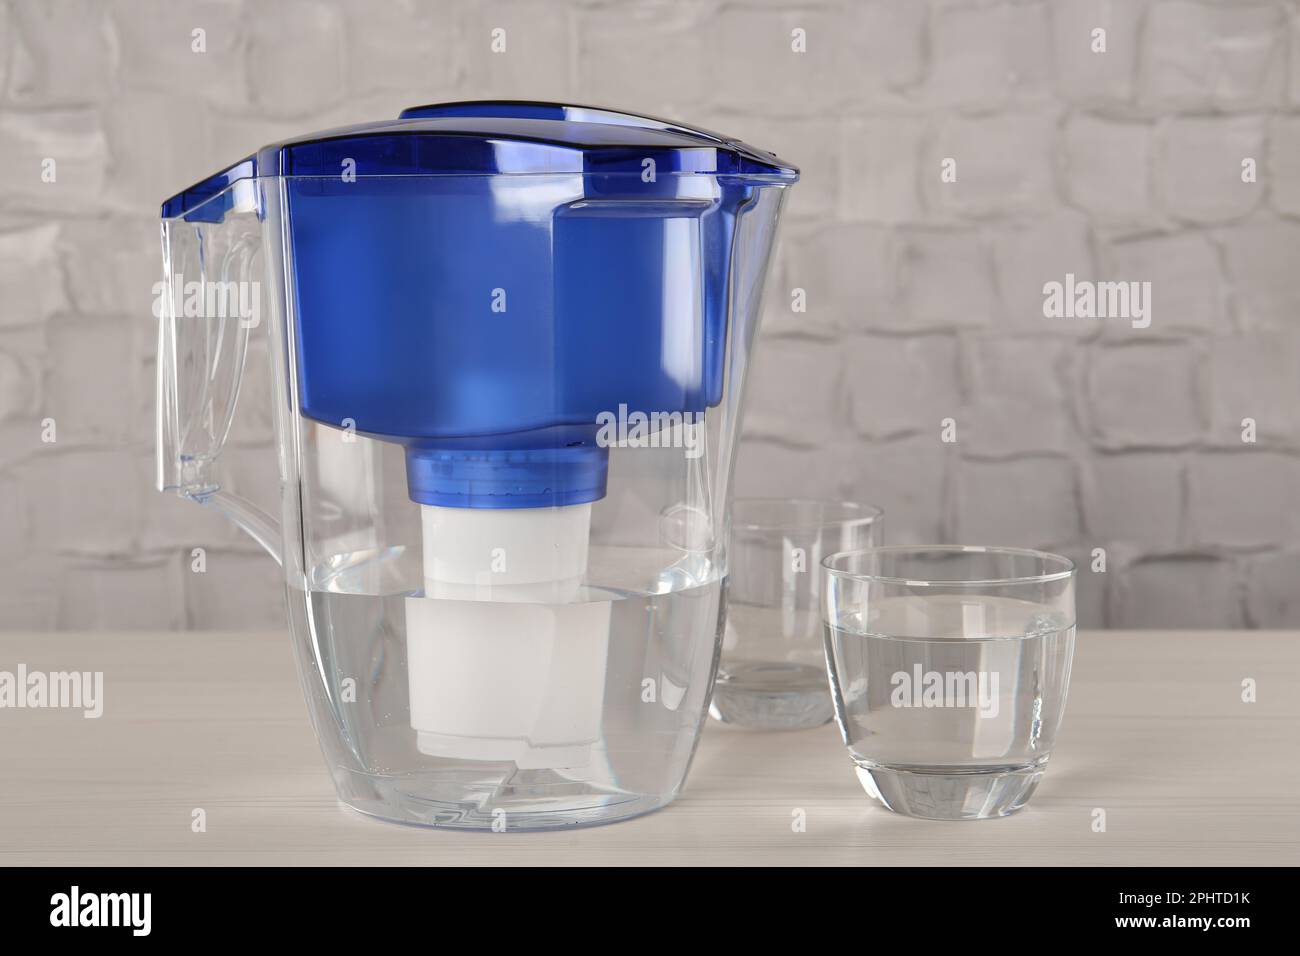 https://c8.alamy.com/compes/2phtd1k/jarra-de-filtro-y-vaso-con-agua-purificada-en-una-mesa-blanca-en-el-interior-2phtd1k.jpg